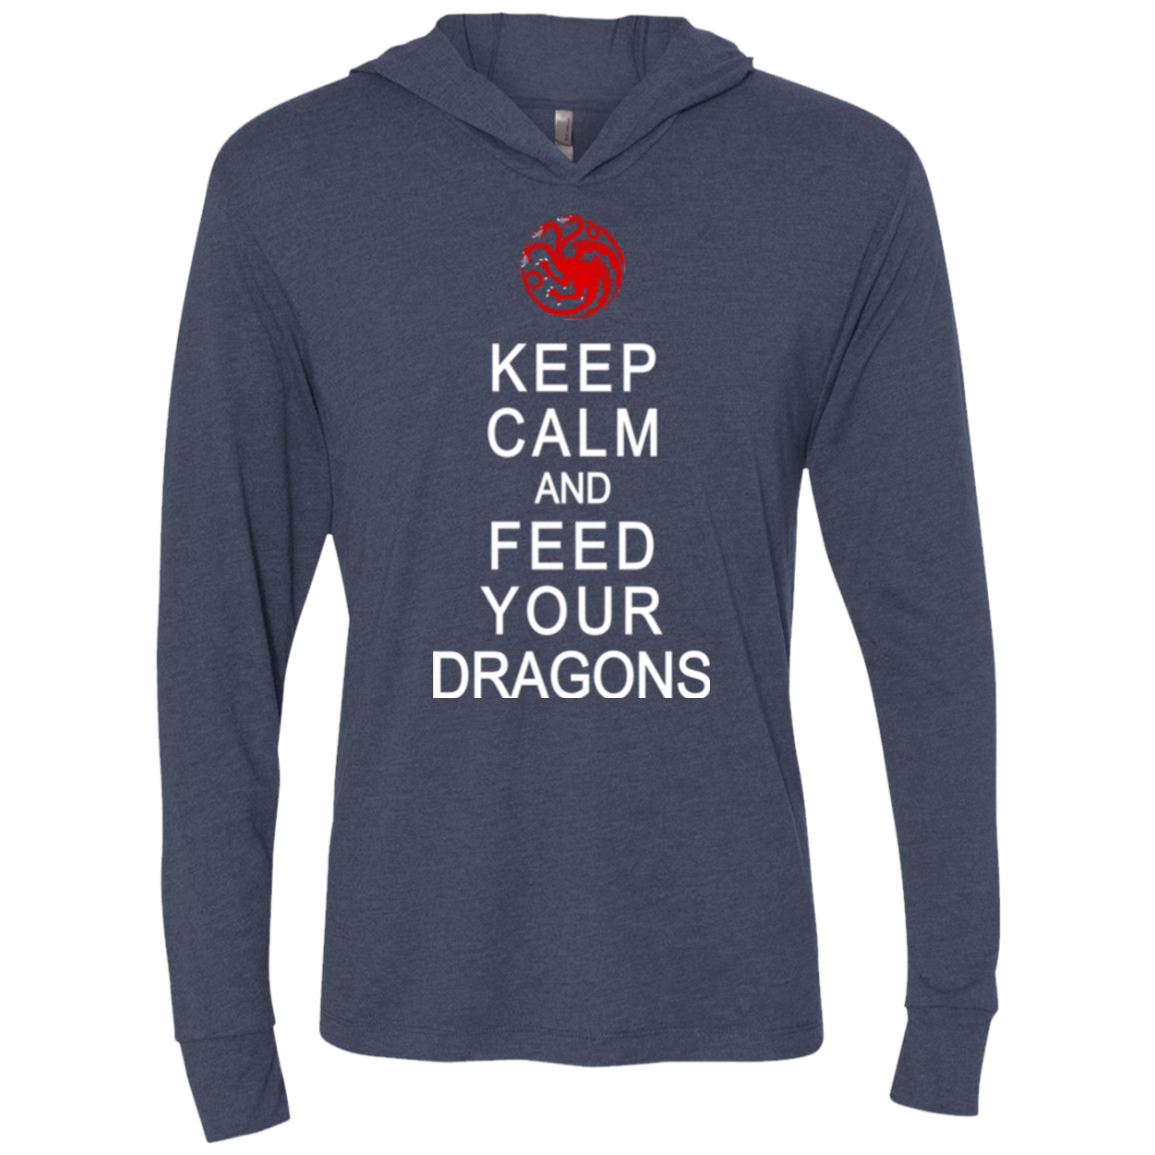 Feed dragons Triblend Long Sleeve Hoodie Tee